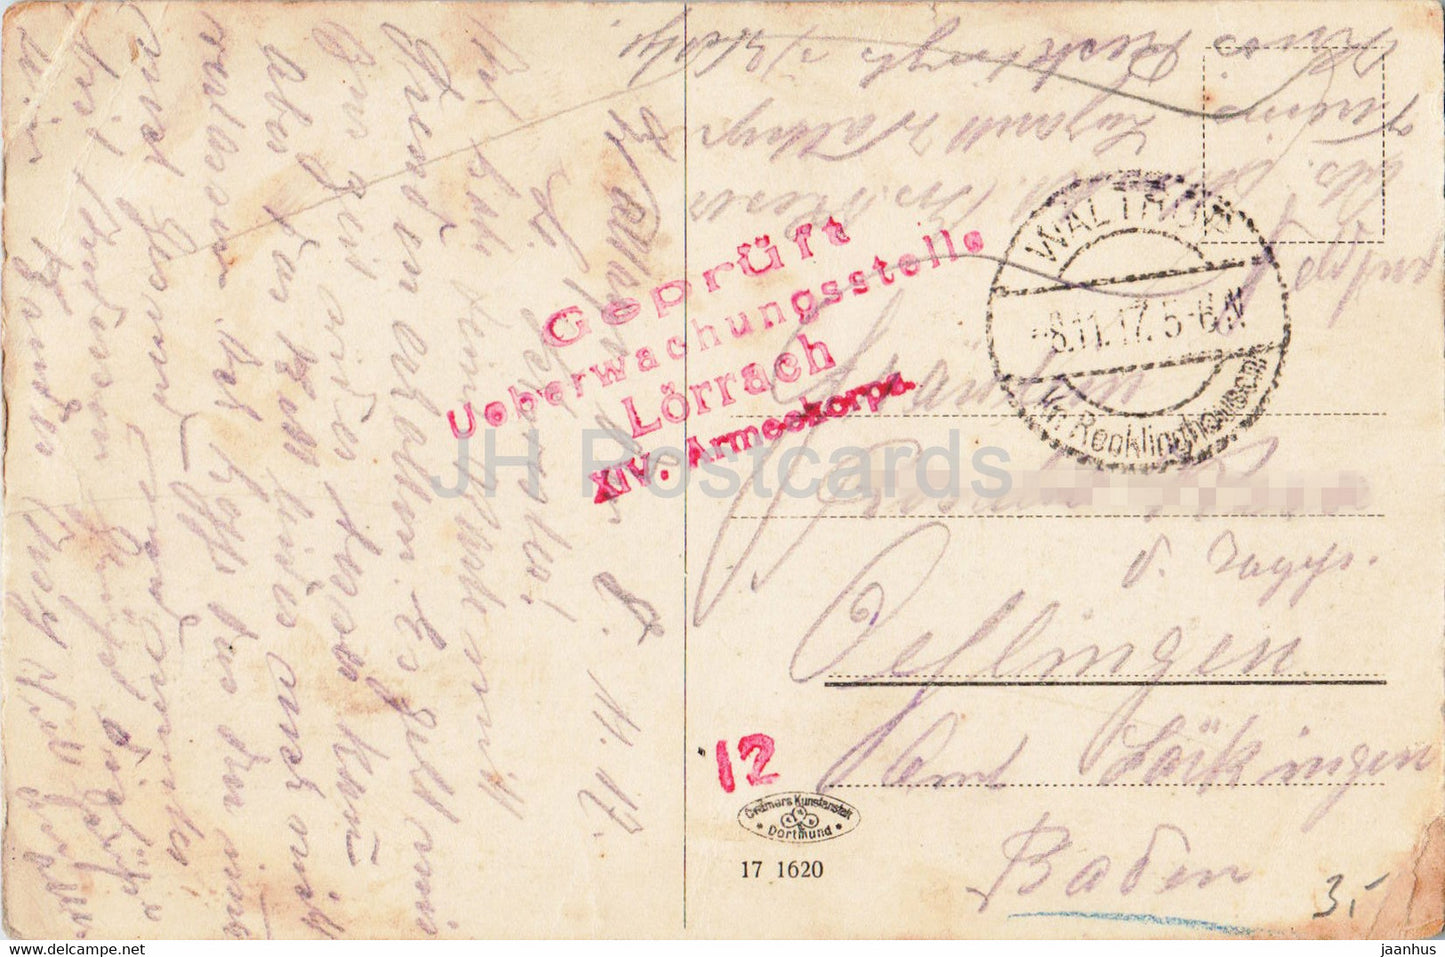 Henrichenburg - Neue Schleuse - Feldpost - XIV. Armeekorps - 1917 - alte Postkarte - Deutschland - gebraucht